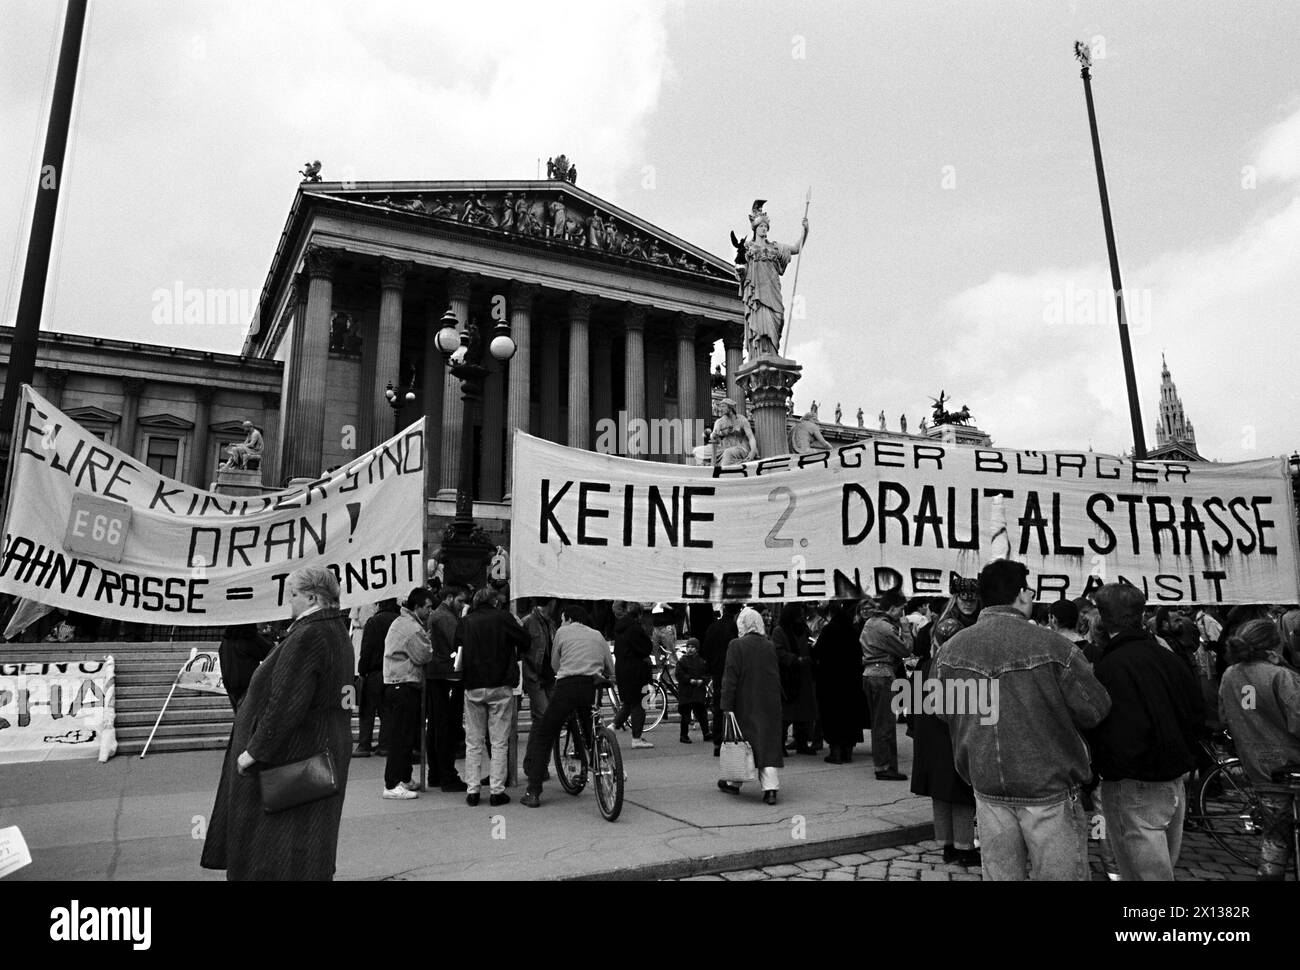 Viena el 20 de abril de 1991: Alrededor de 2,000 manifestantes protestaron contra el "infierno de tráfico Austria". Reclamaron una disminución del tráfico de tránsito, no más carreteras para las carreteras de tránsito, prioridad para los ferrocarriles y voz garantizada para la gente en la planificación, construcción y manejo. - 19910420 PD0006 - Rechteinfo: Derechos Gestionados (RM) Foto de stock